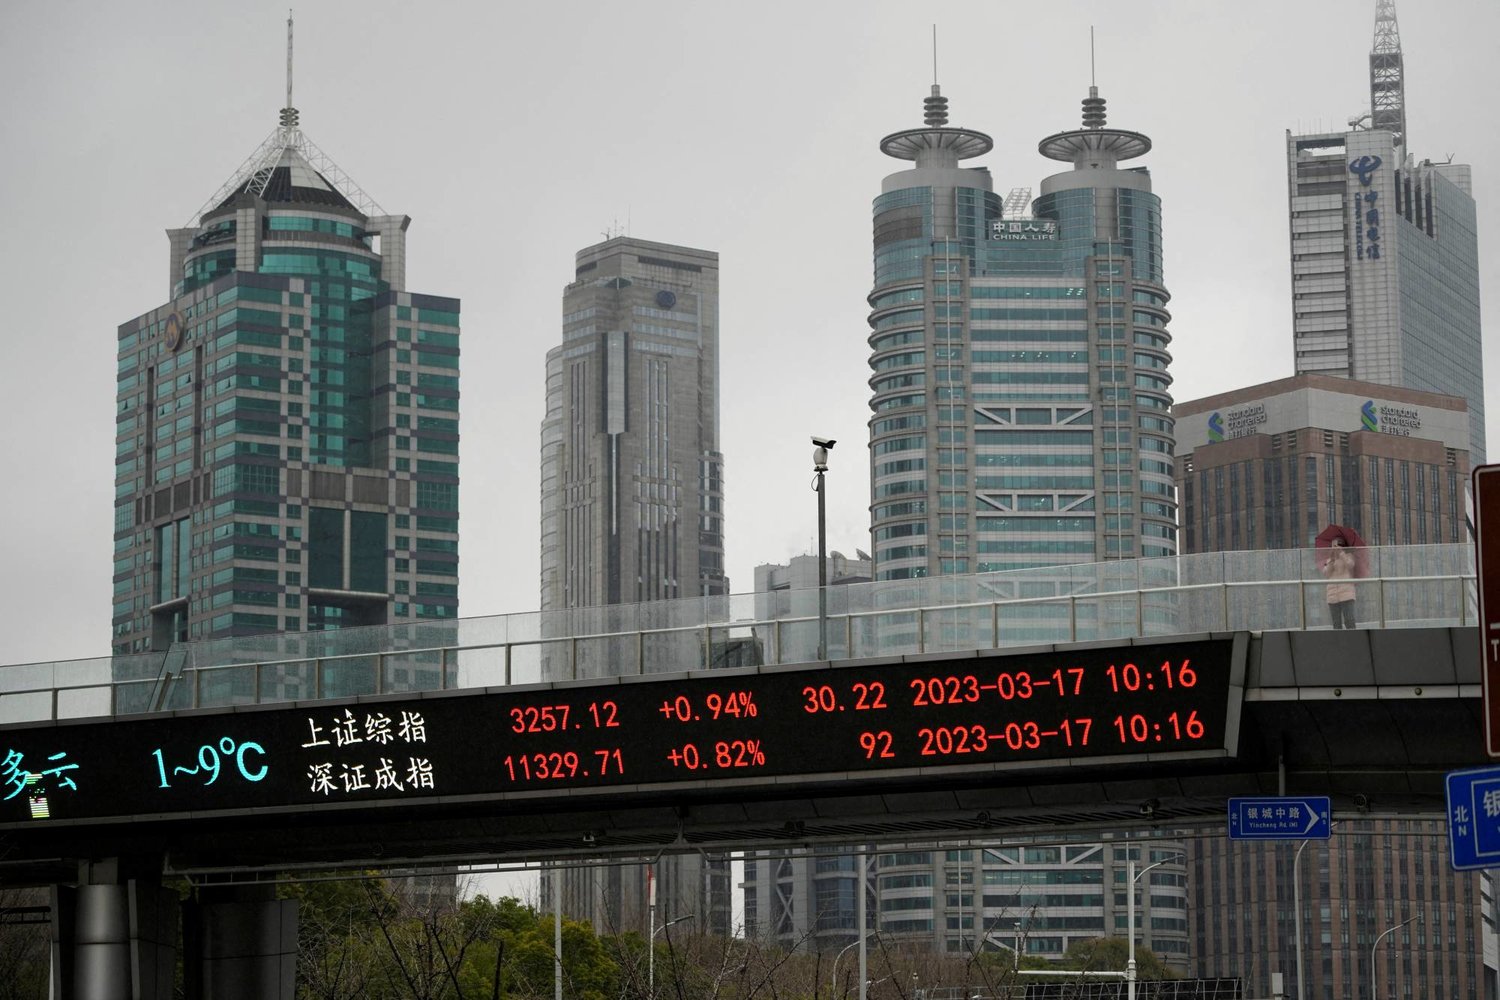 شاشة ضخمة على أحد الجسور في مدينة شنغهاي الصينية تعرض حركة الاسهم على مؤشري شنغهاي وشينزن (رويترز)